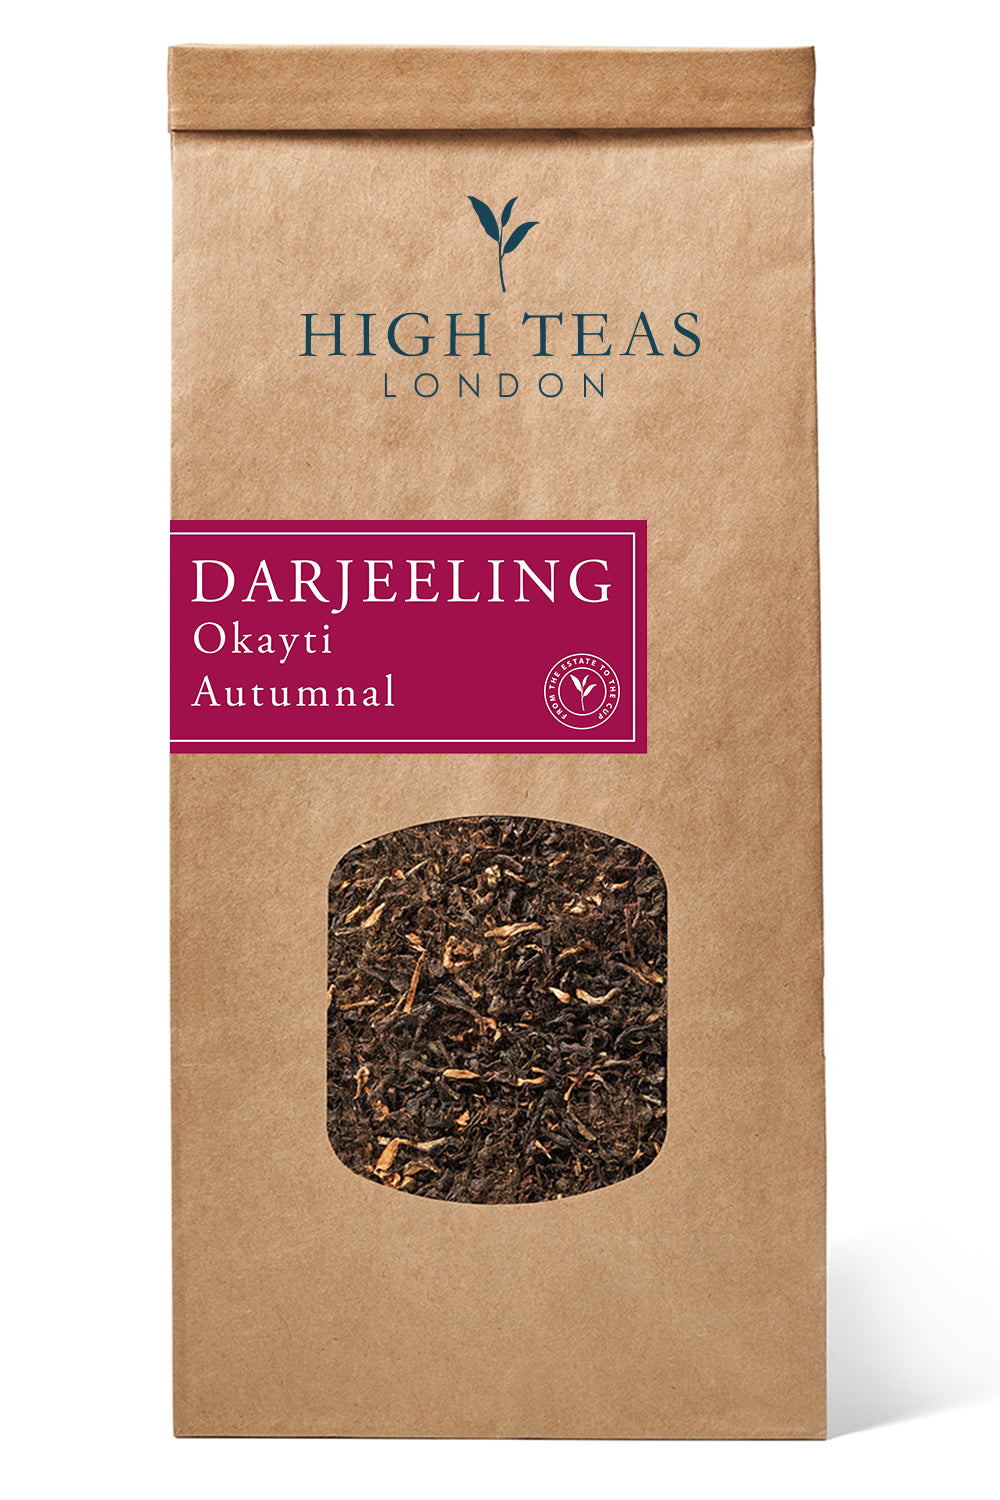 Darjeeling - Okayti Autumnal 2019 FTGFOP1-250g-Loose Leaf Tea-High Teas